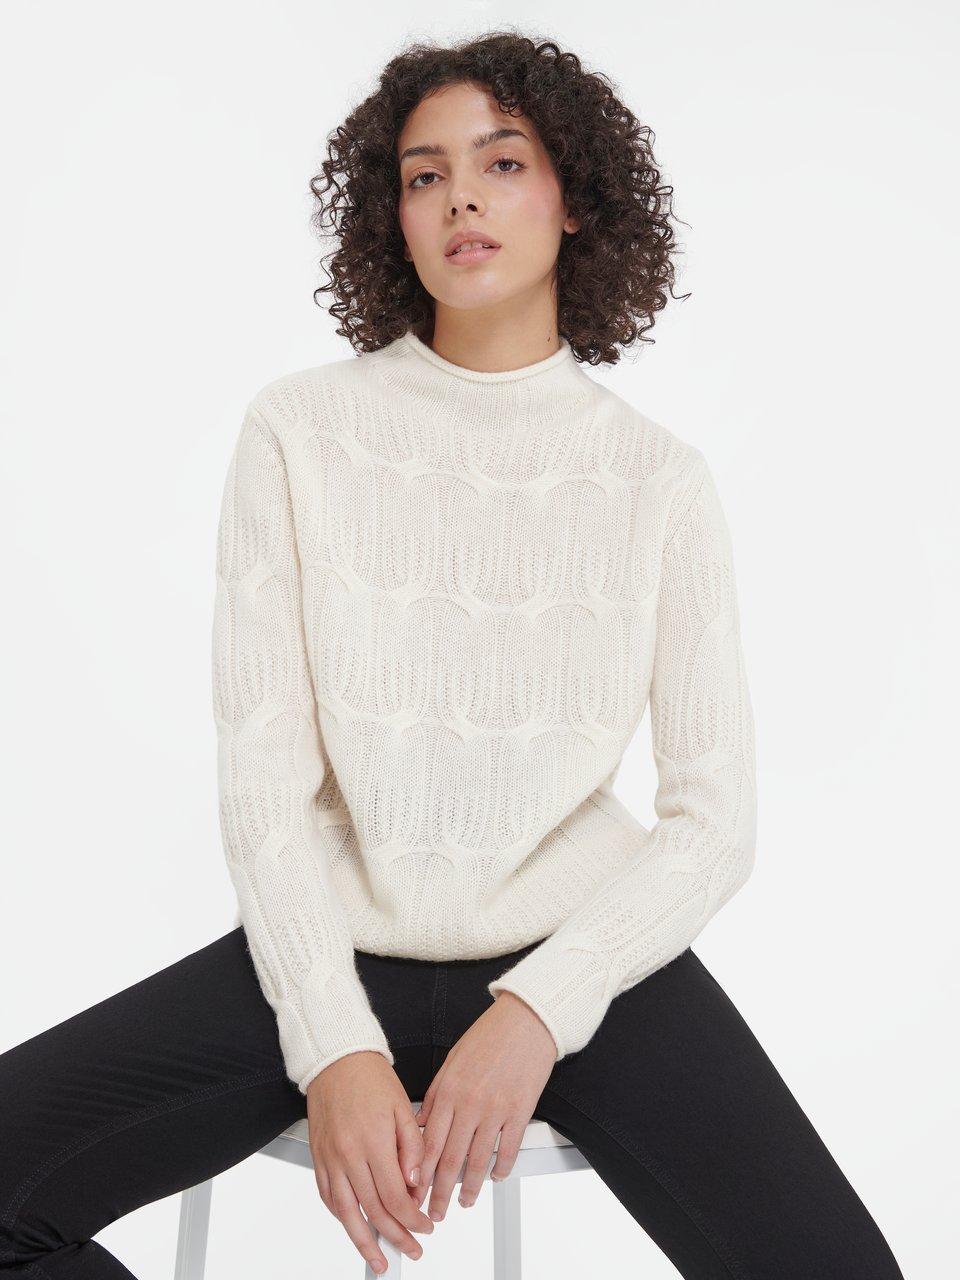 Damen Pullover in Größe 42 Peter online kaufen bei Hahn